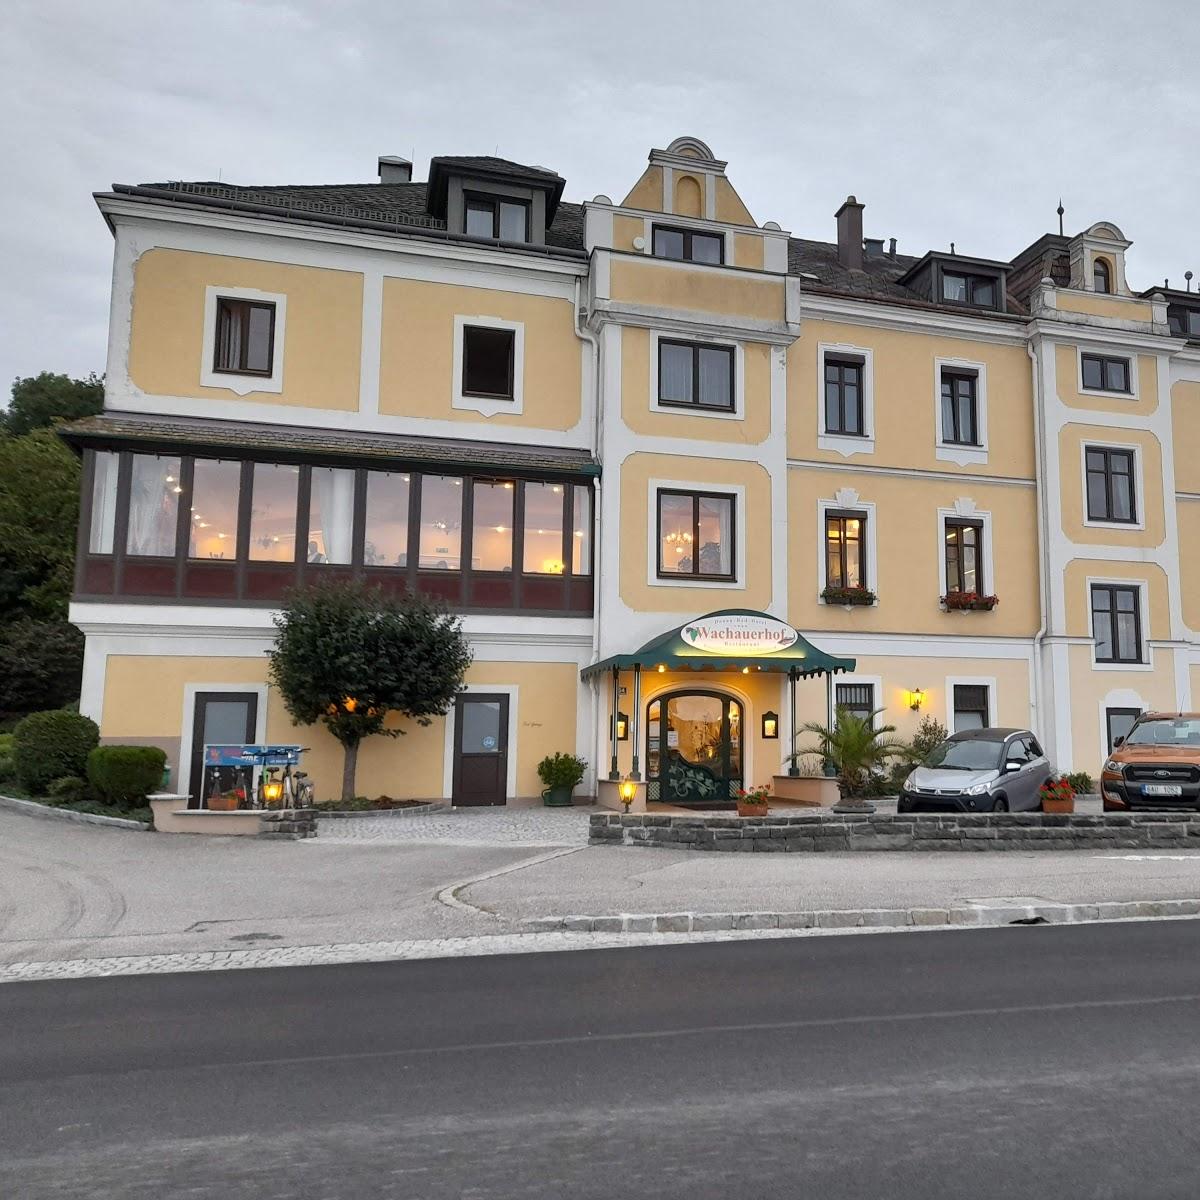 Restaurant "Hotel Wachauerhof" in Marbach an der Donau